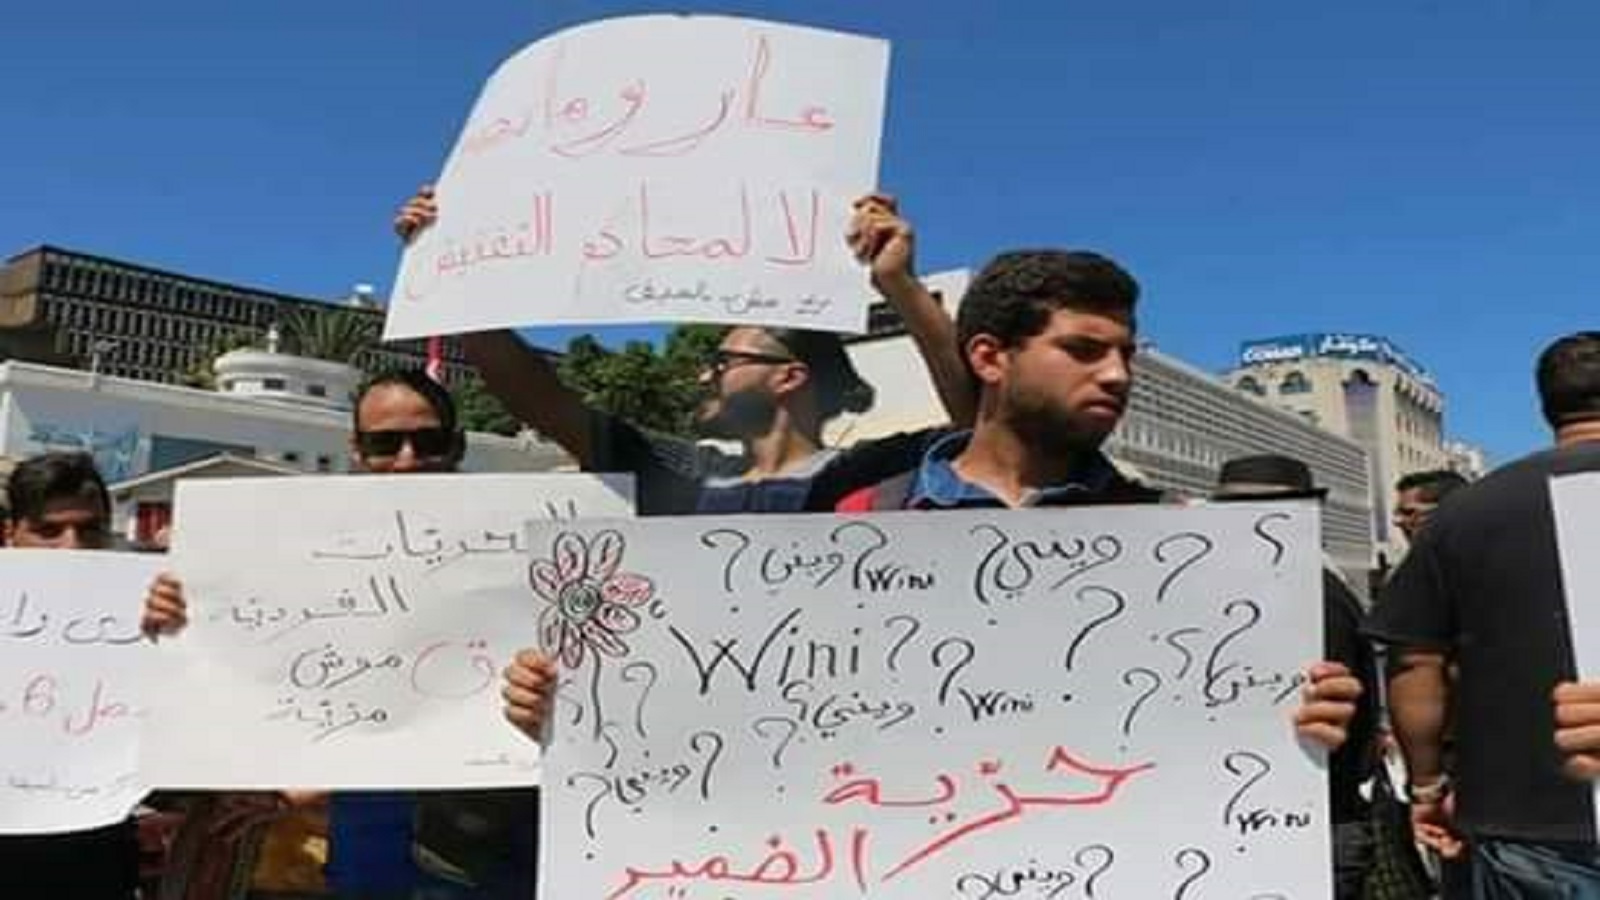 تونس دولة مدنية تحتكم إلى الدستور والقوانين الوضعية وليس للشريعة الإسلامية